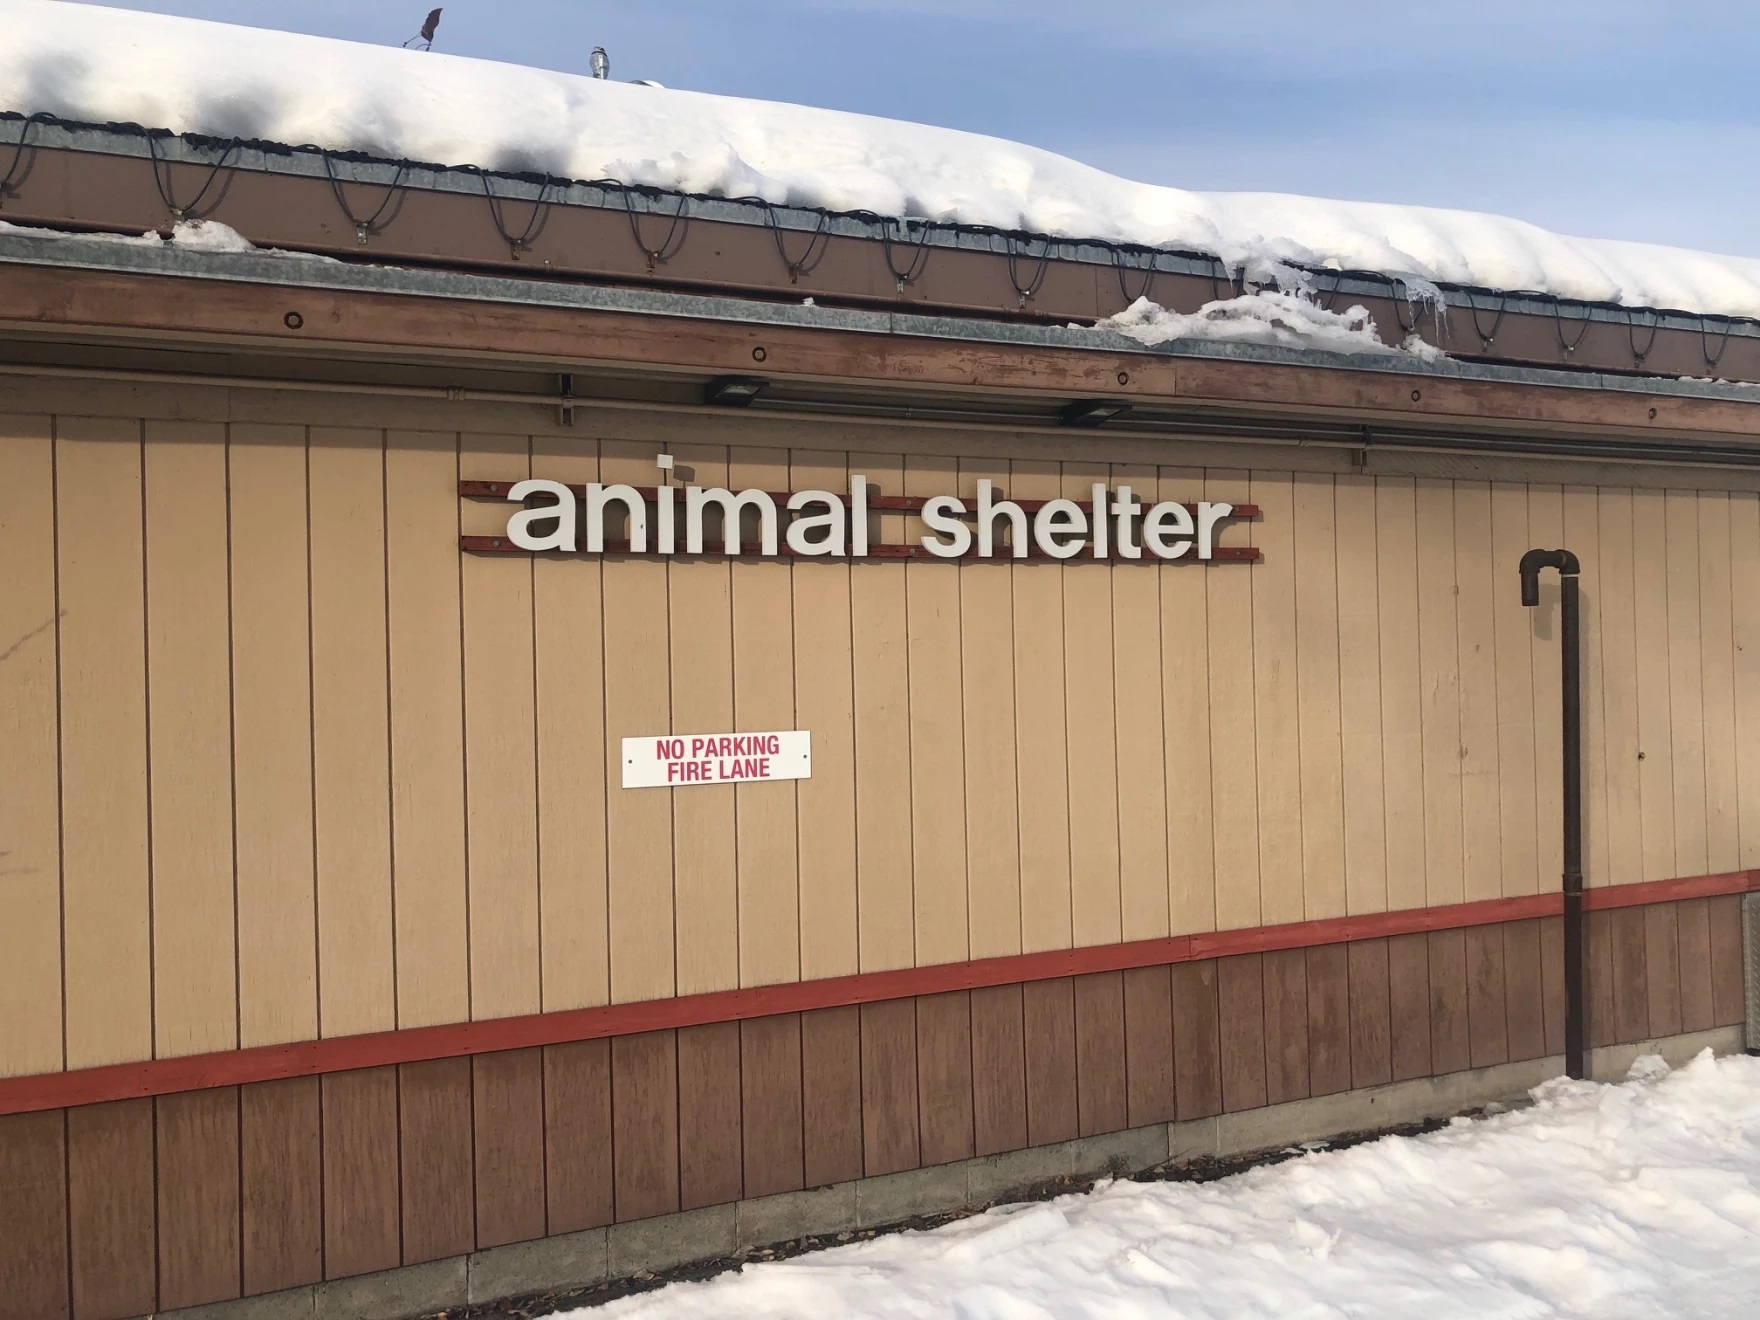 the Fairbanks Animal Shelter